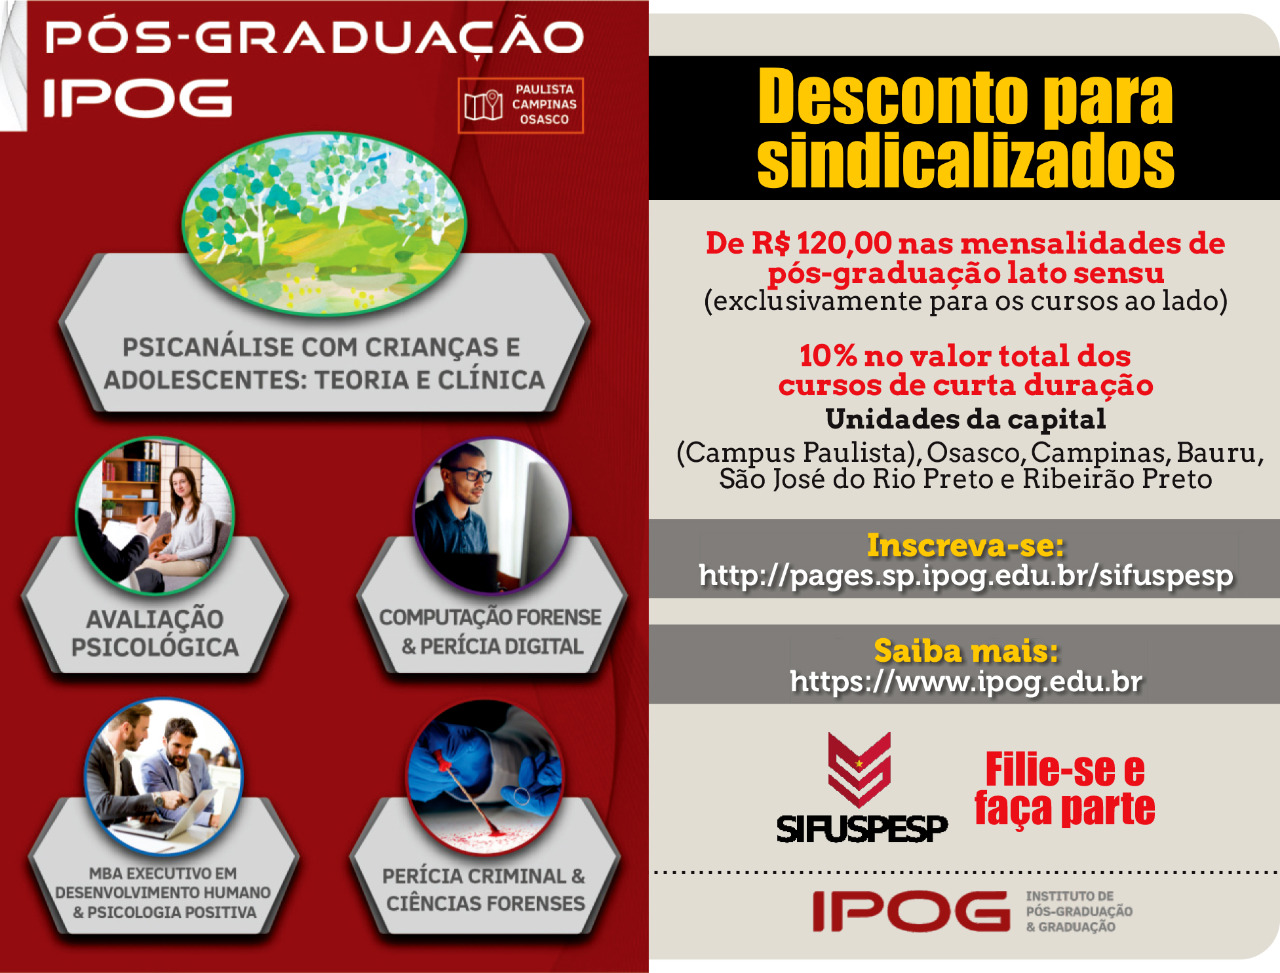 Instituto de Pós-Graduação(IPOG)